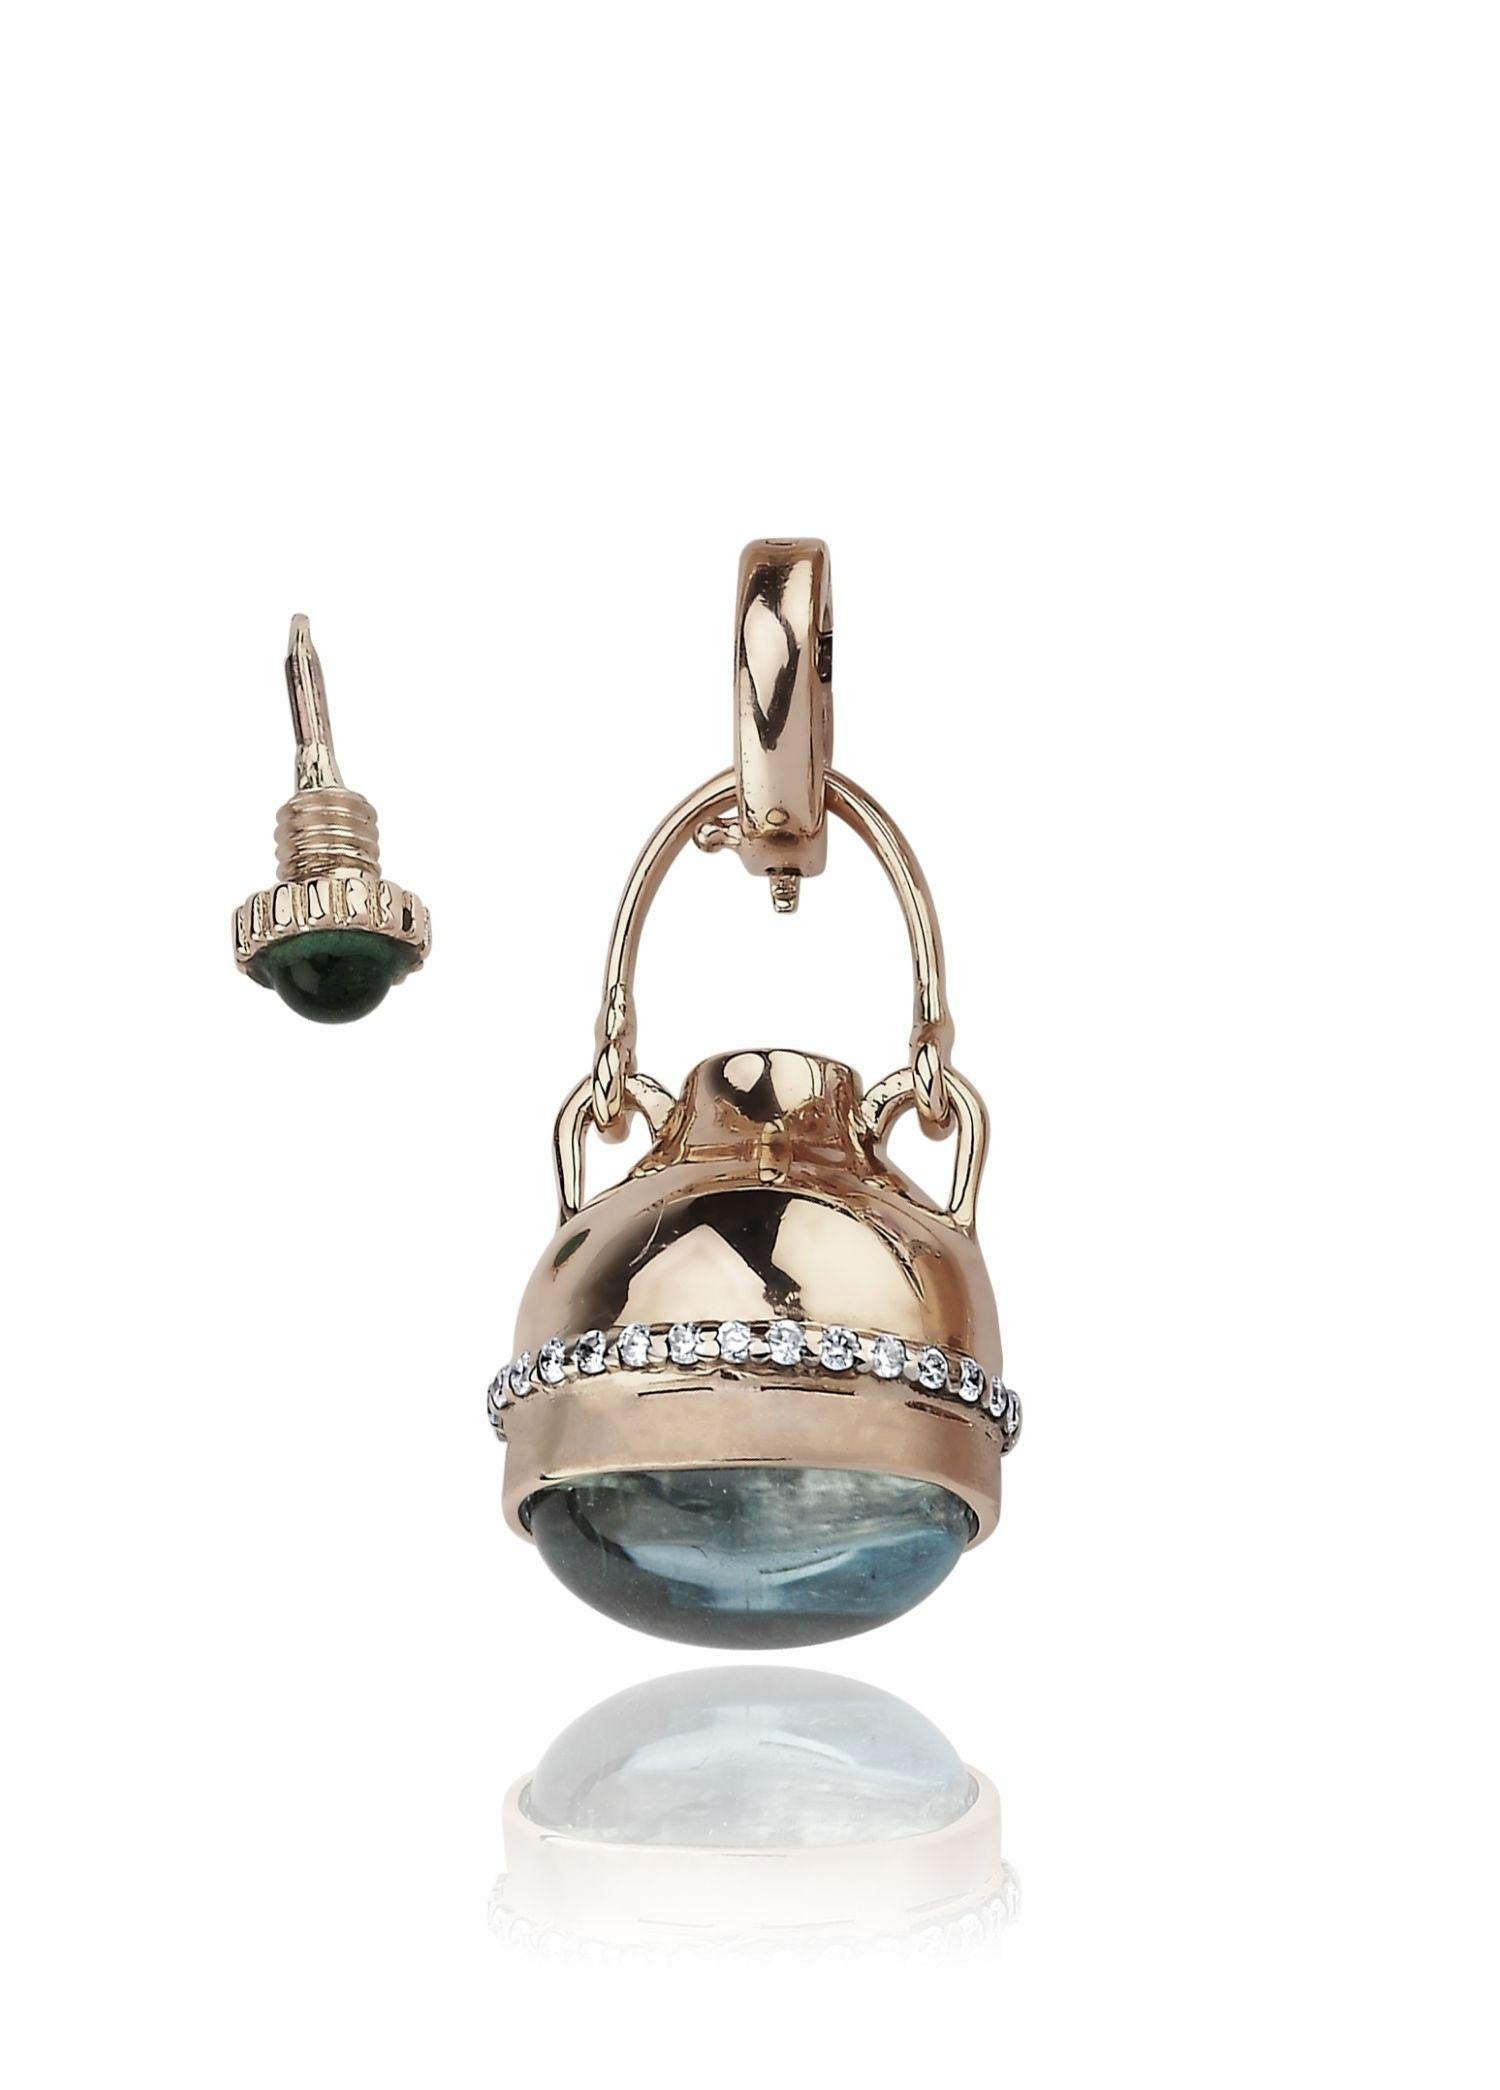 Melie Jewelry Parfümflasche Anhänger Charme

14K Rose Gold, 0,11 ct Diamant/G-VS, 0,24 ct Turmalin, 3,52 ct Blautopas

Die Geschichte hinter
Im 16. Jahrhundert war 